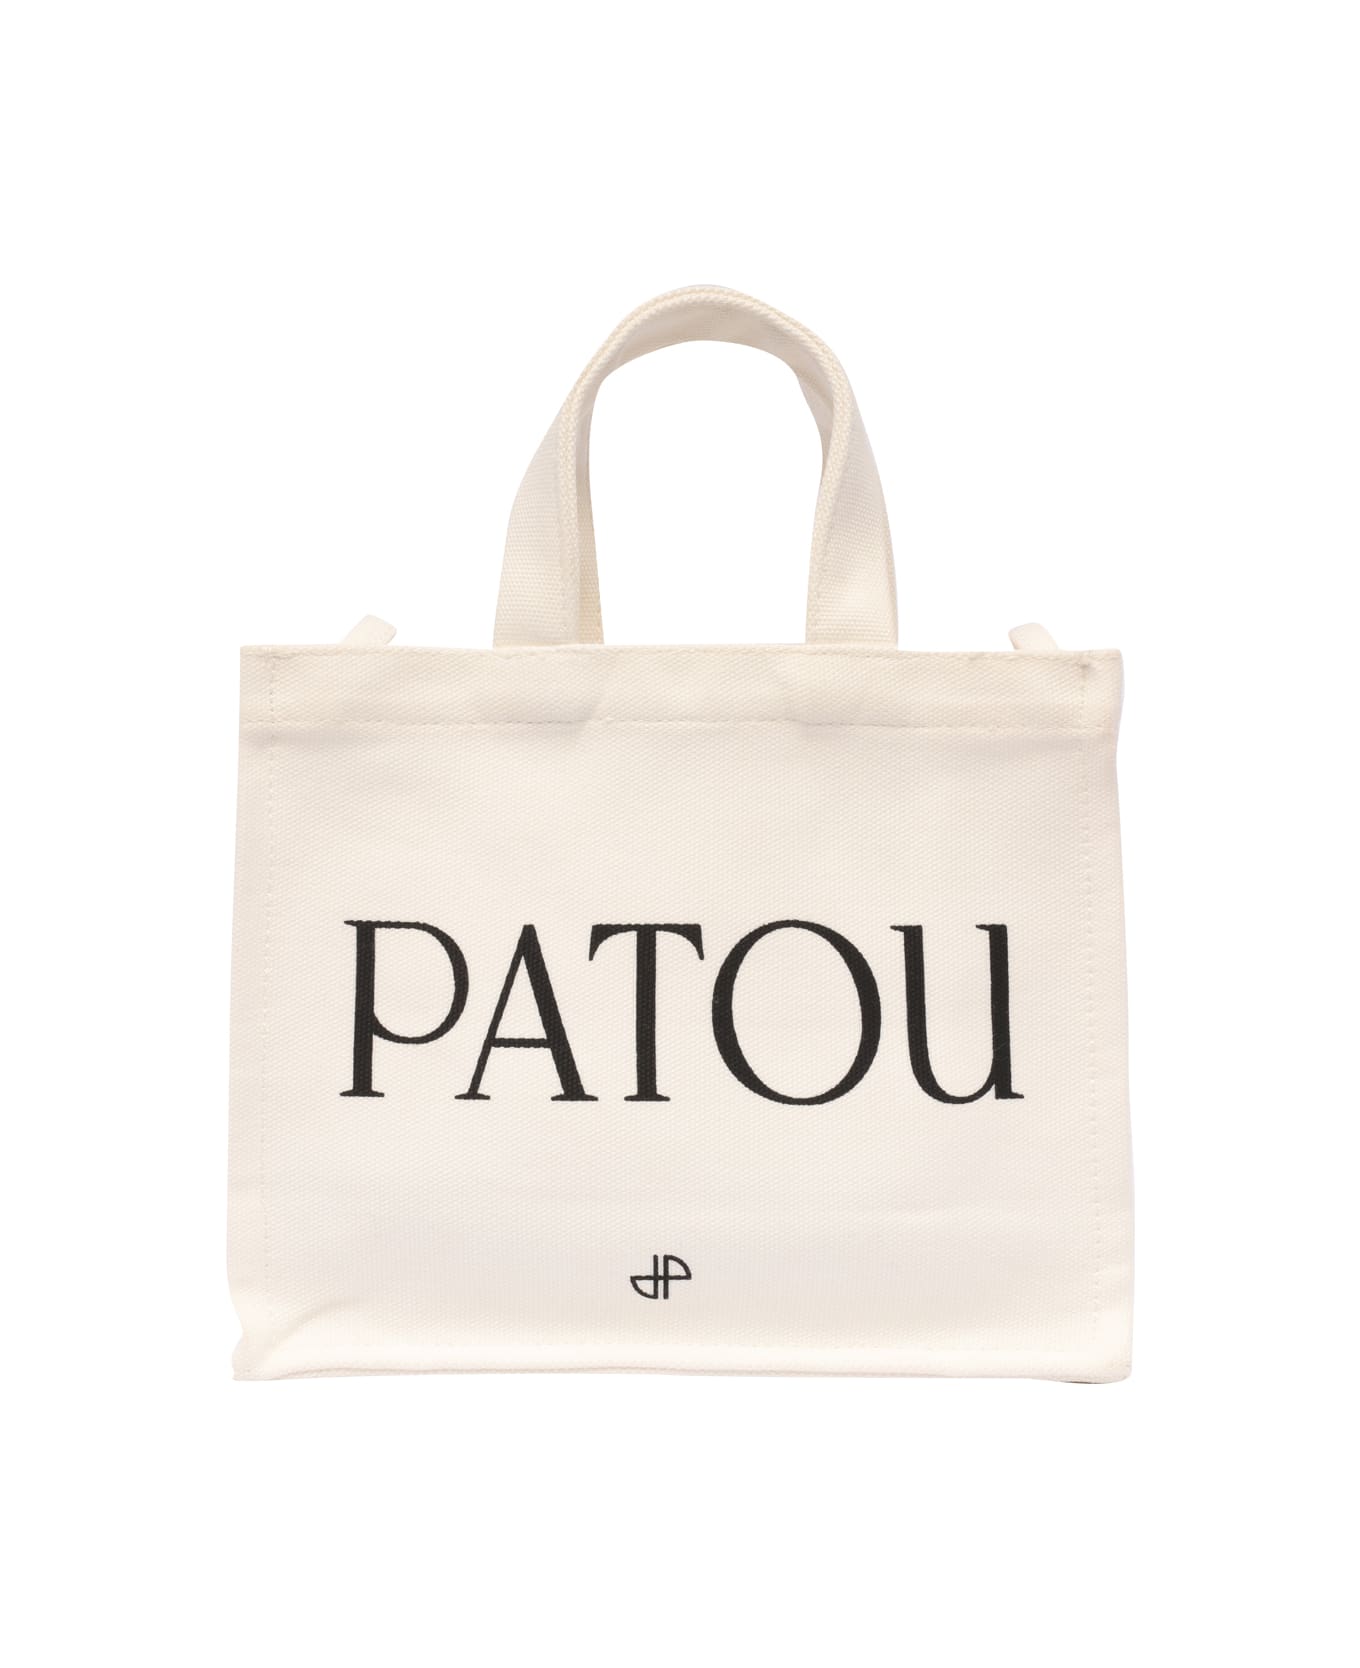 Patou Logo Tote Bag - White トートバッグ